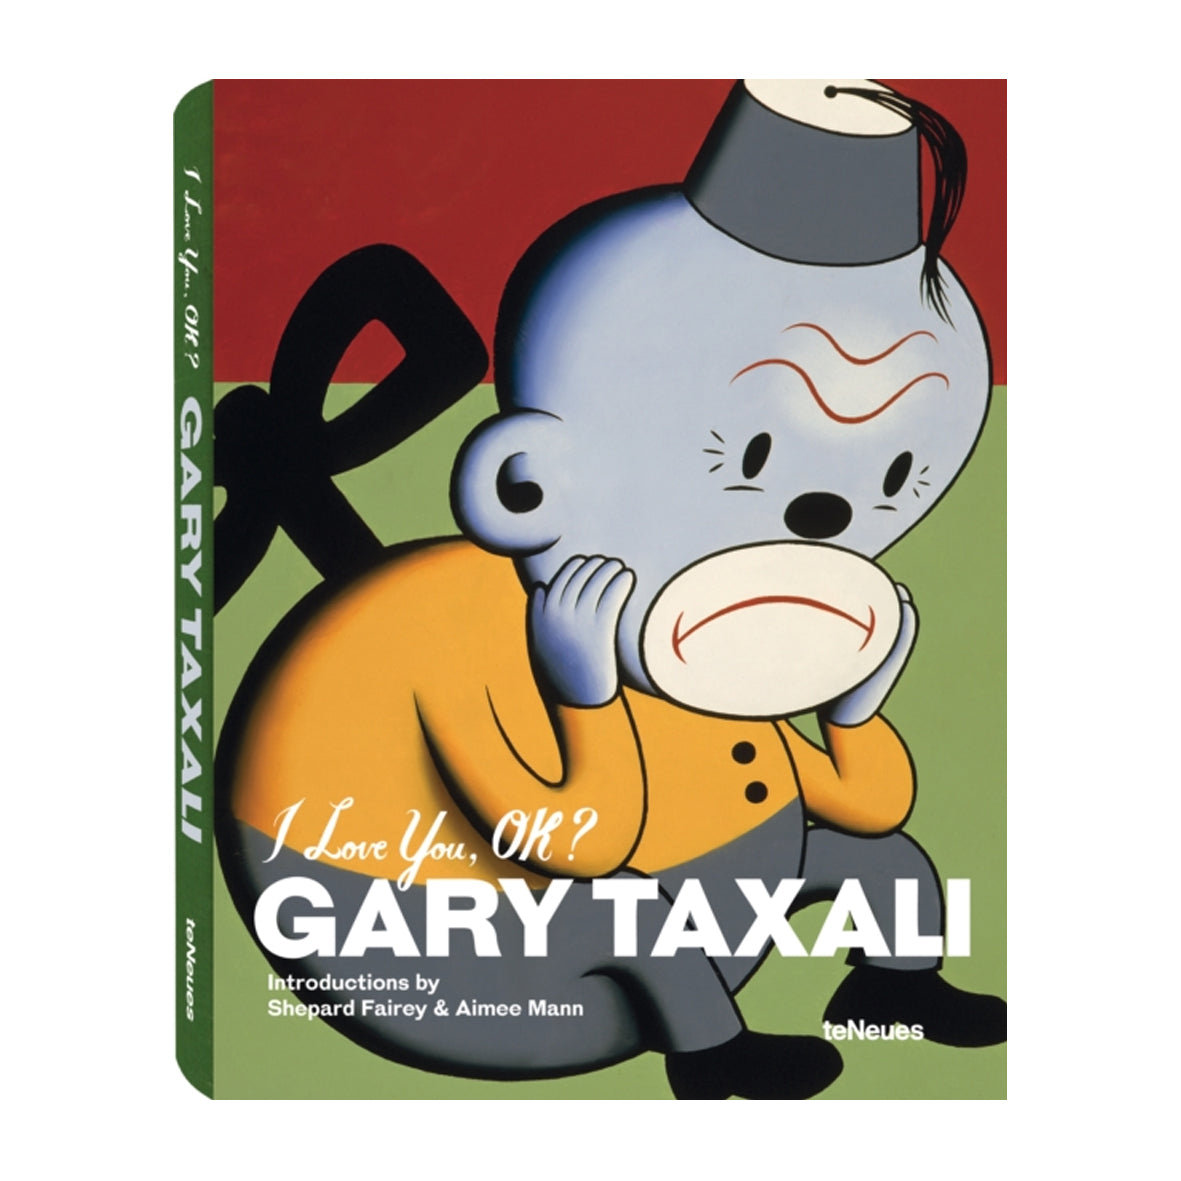 Book - I Love you Ok? Gary Taxali